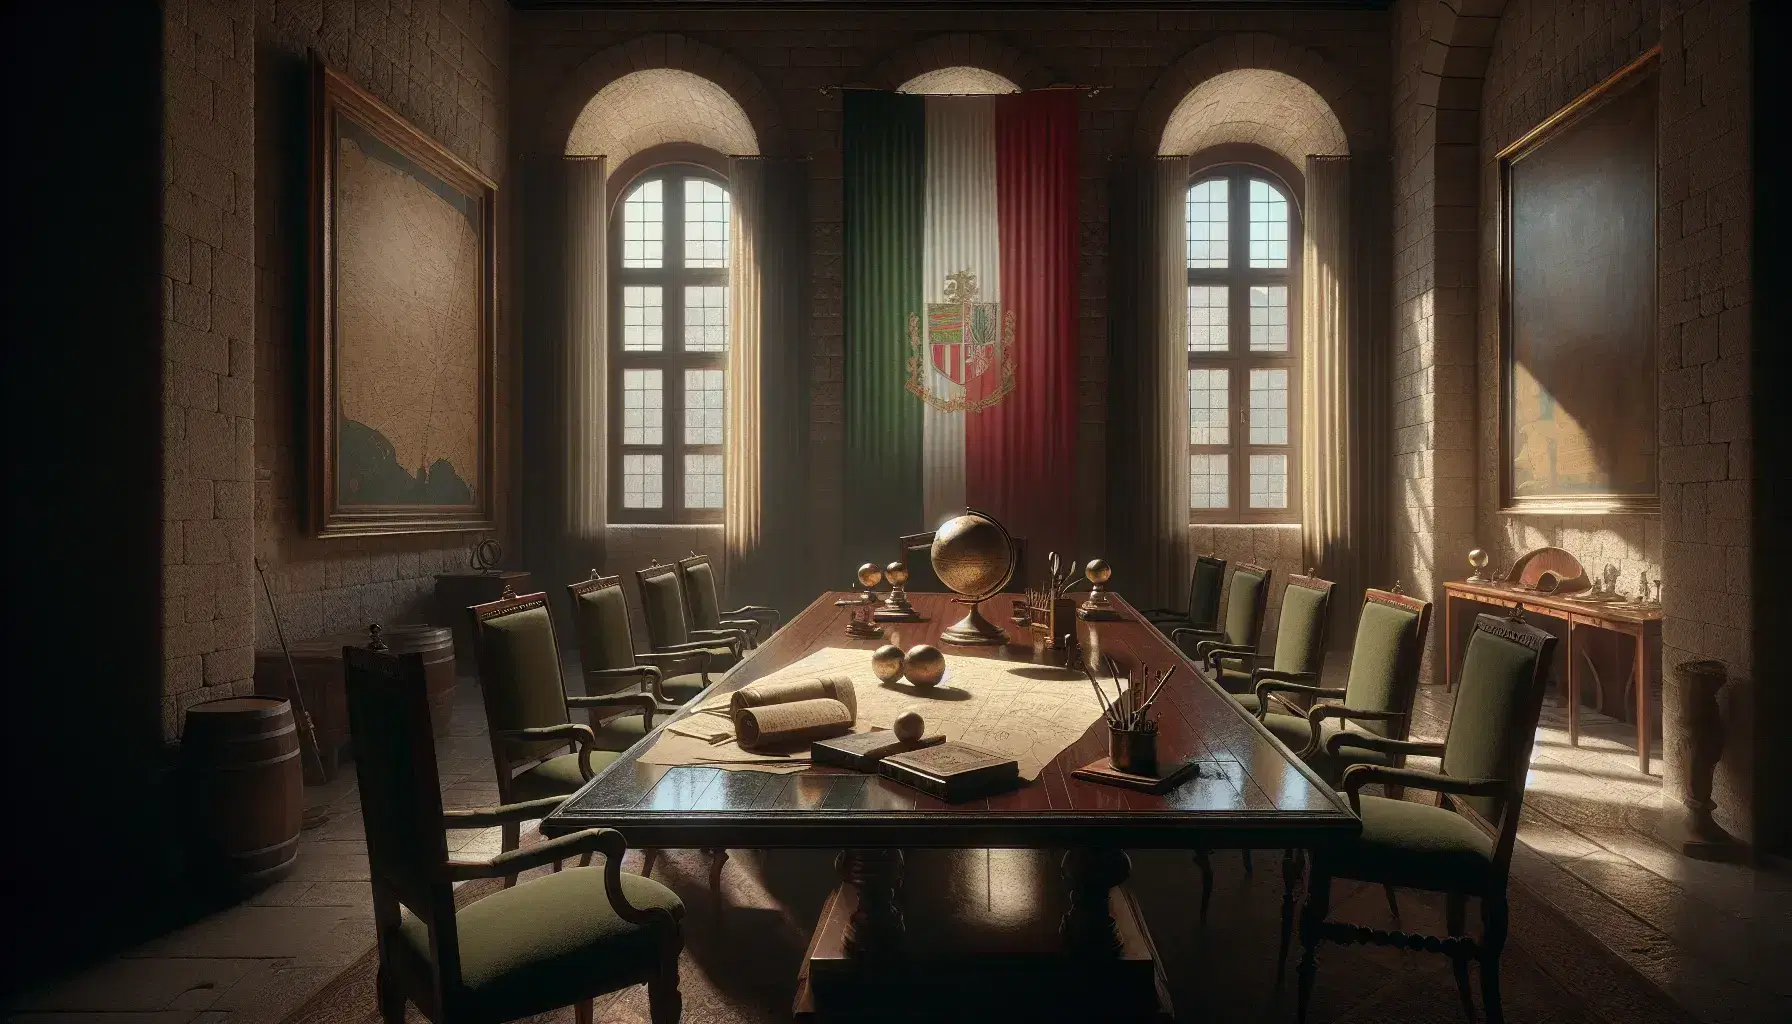 Sala storica con pareti in pietra, tavolo in legno scuro, sedie antiche, mappe, penne stilografiche, globo stilizzato e bandiera tricolore.